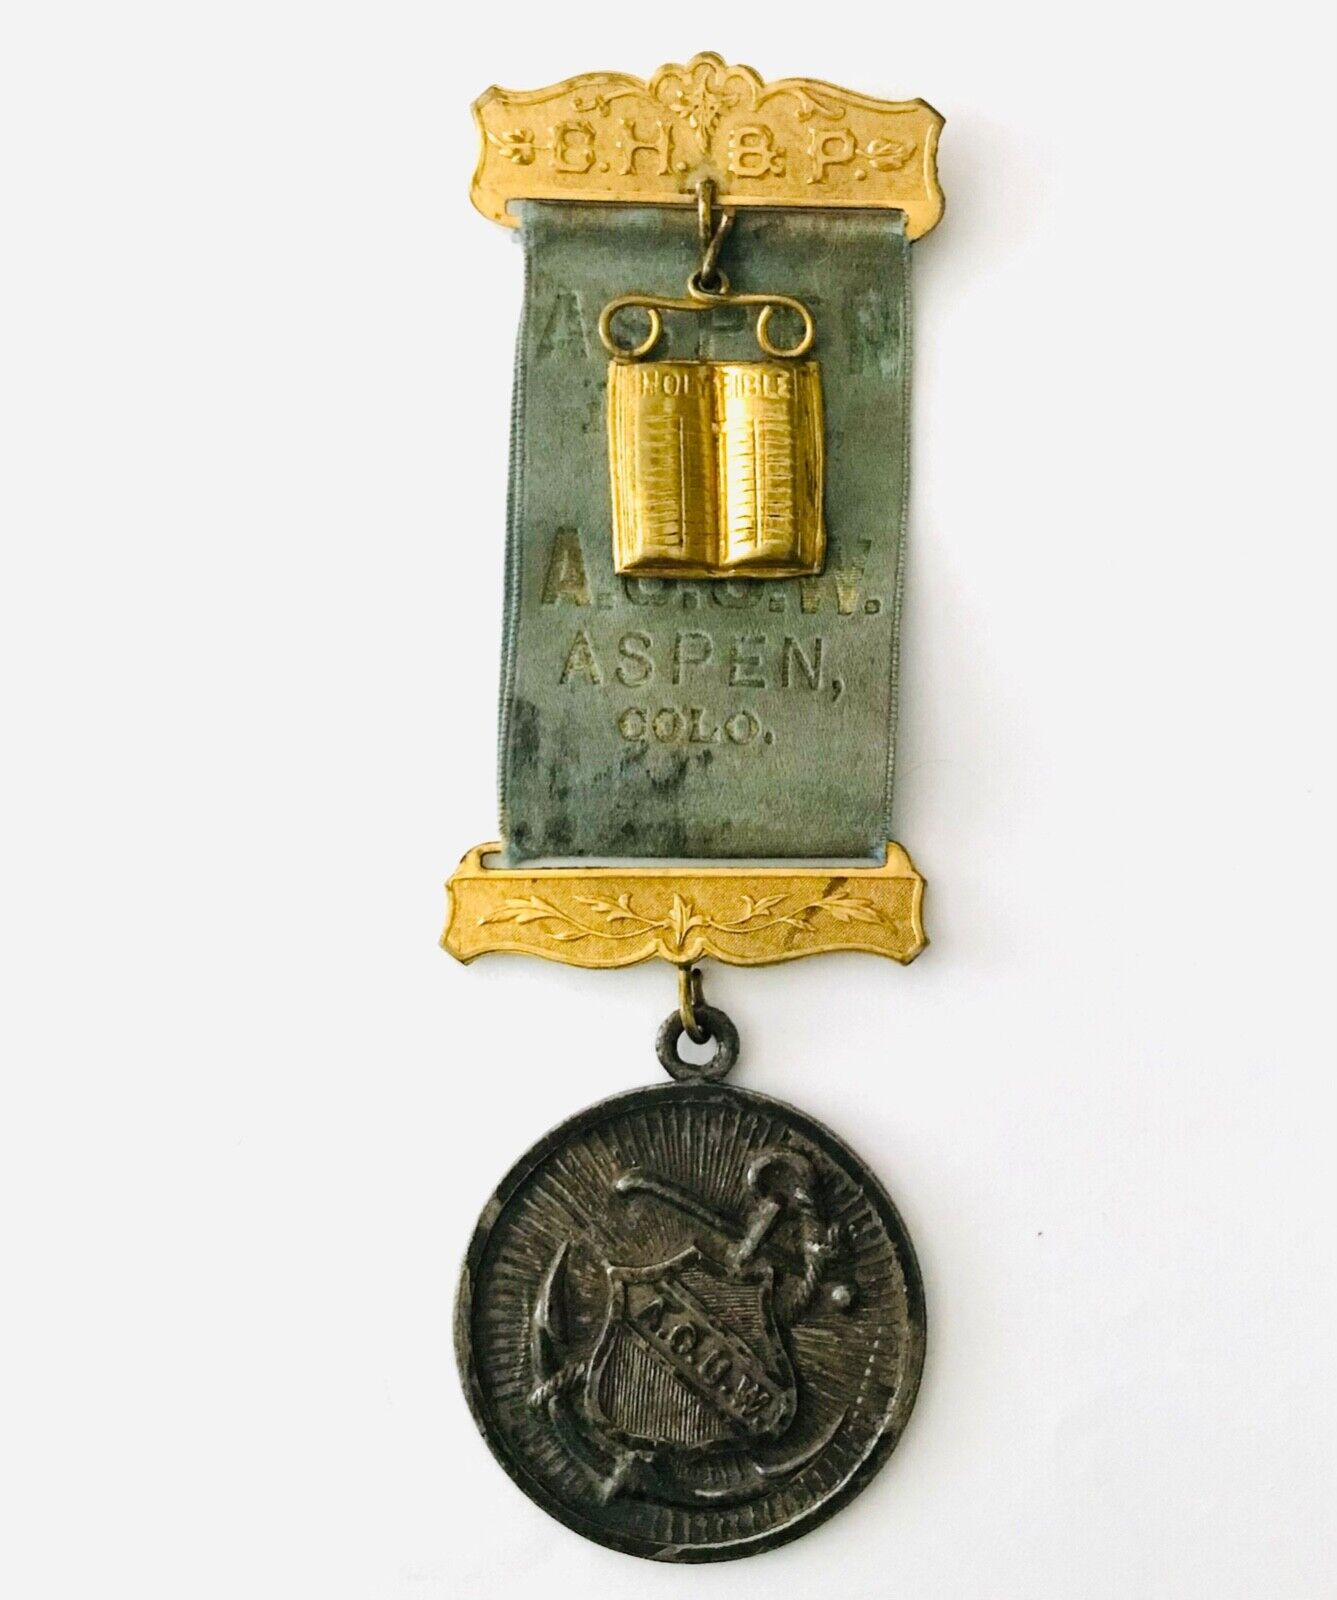 Aspen Lodge #21 Antique A.O.U.W. Medal Ribbon Breast Jewel Ancient Order Workmen